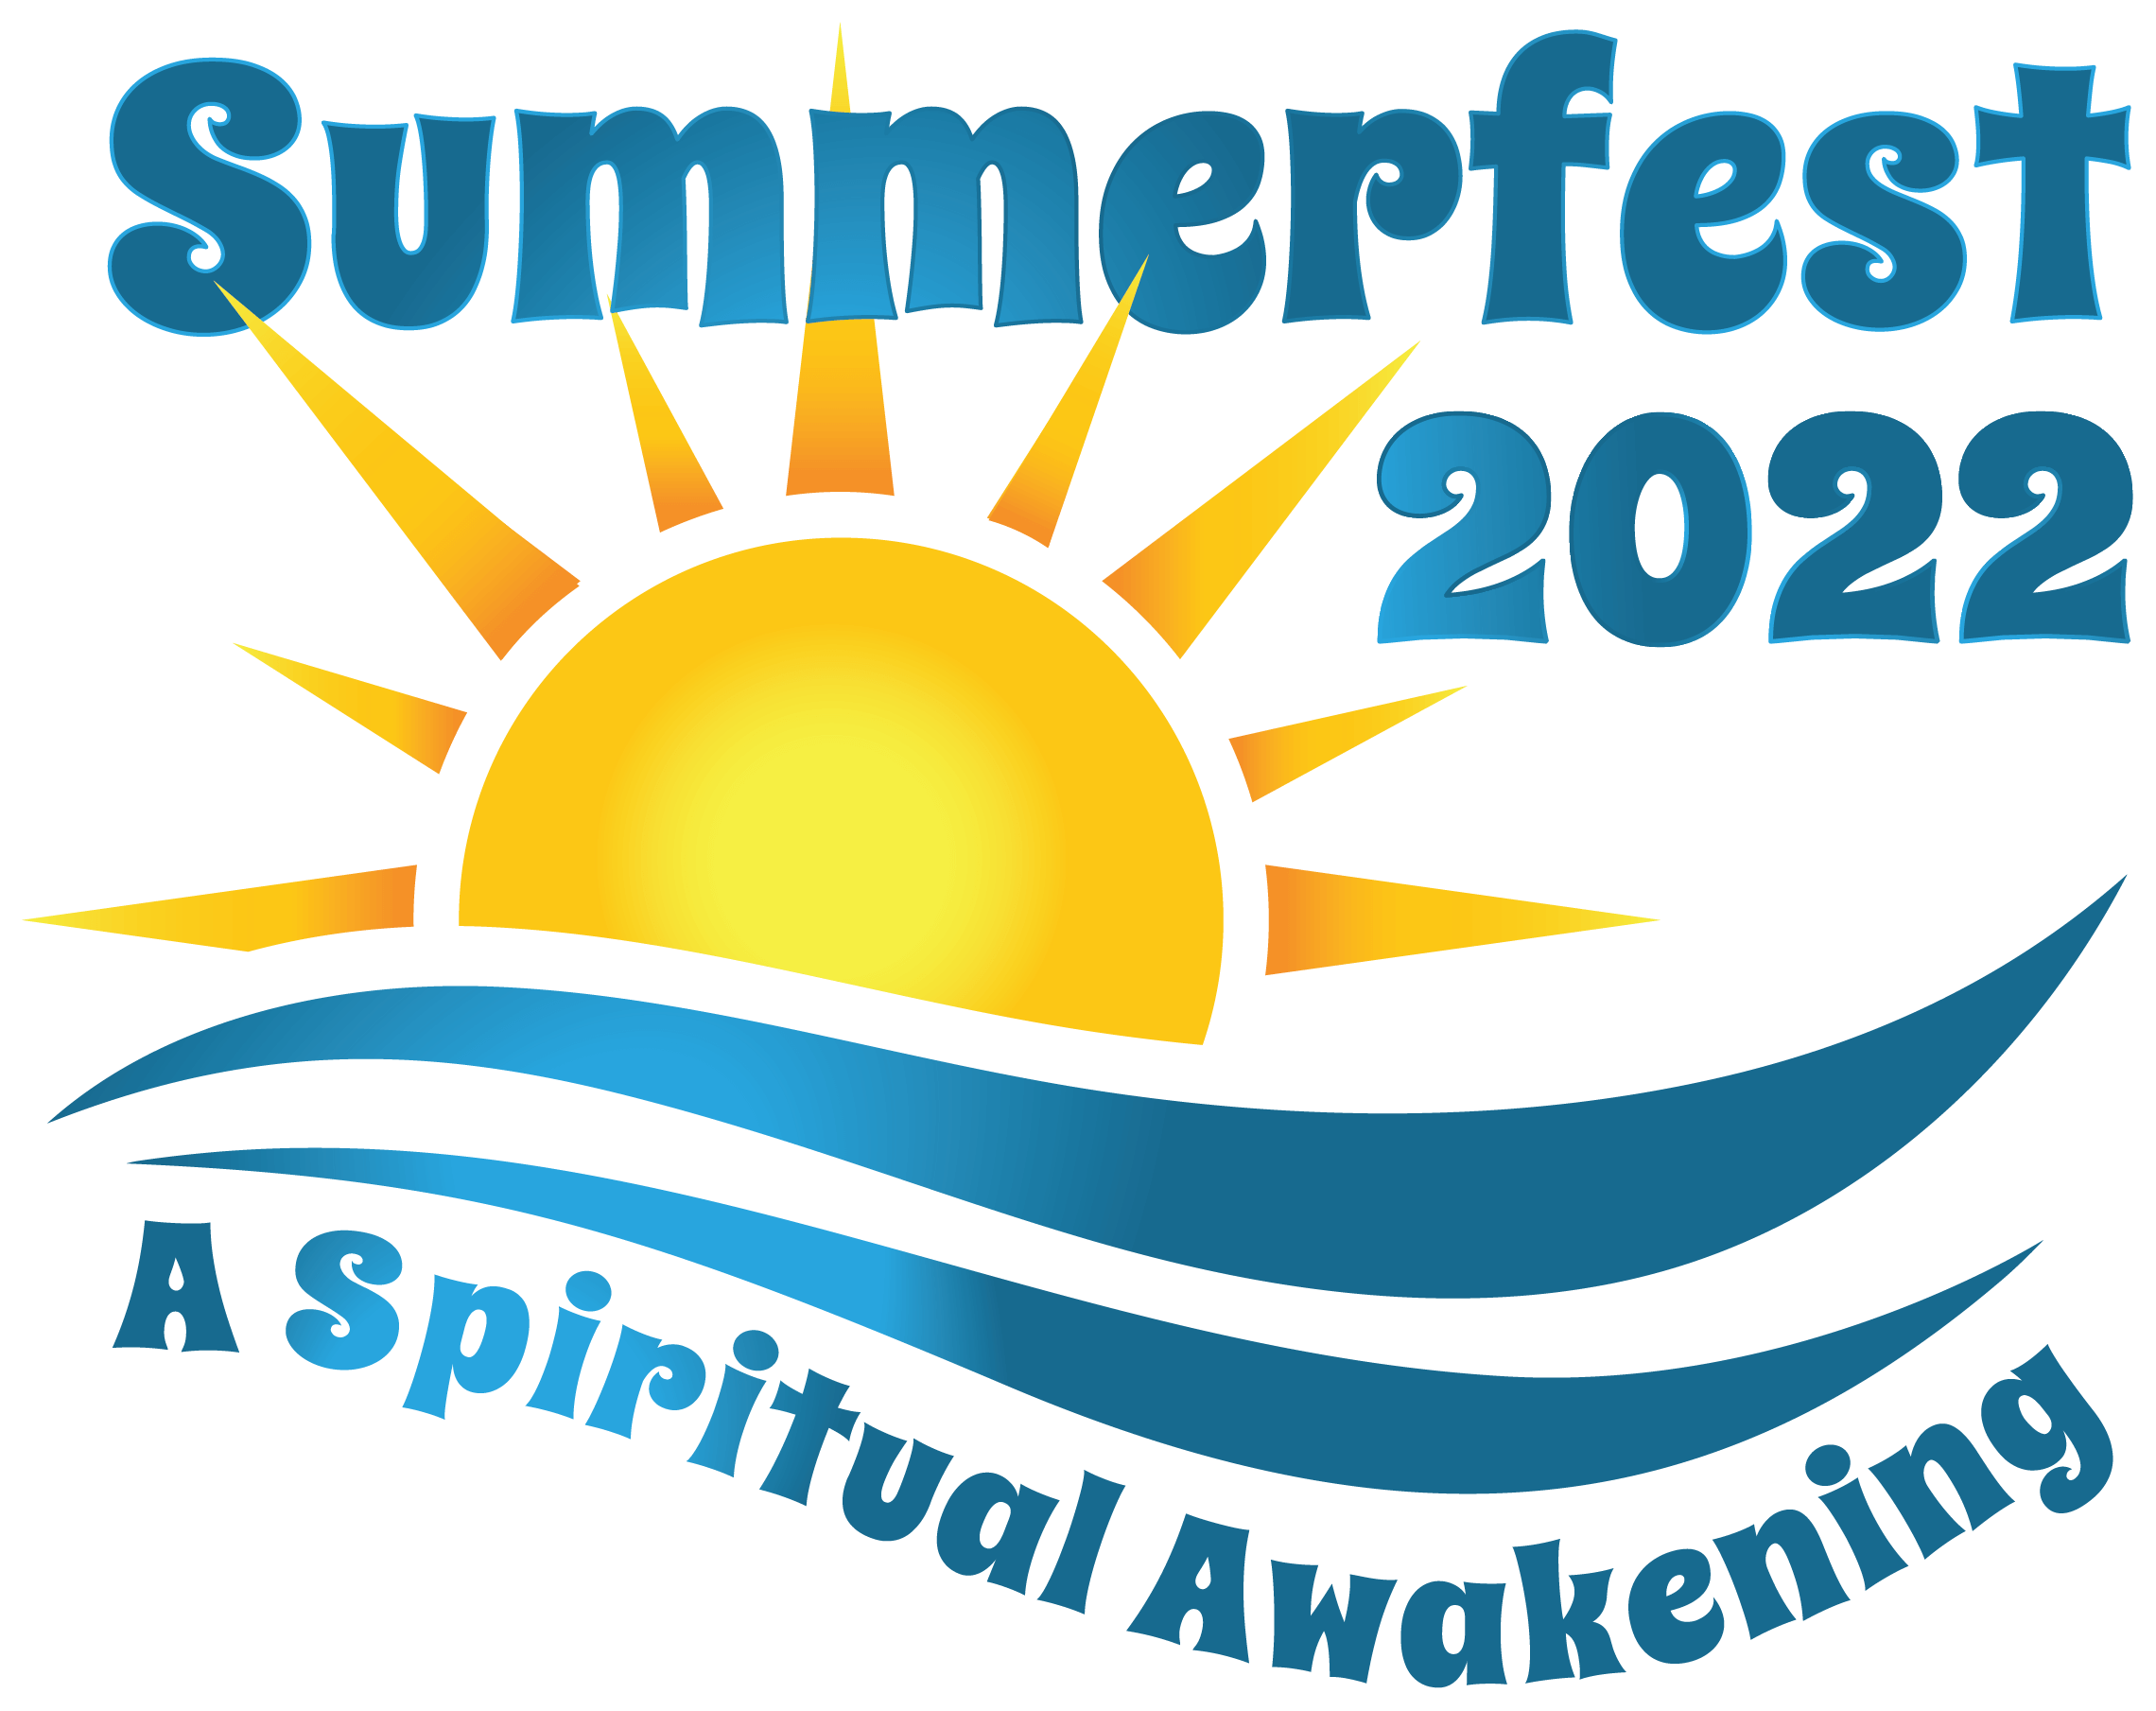 Friends of Summerfest Inc. | Summerfest 2022